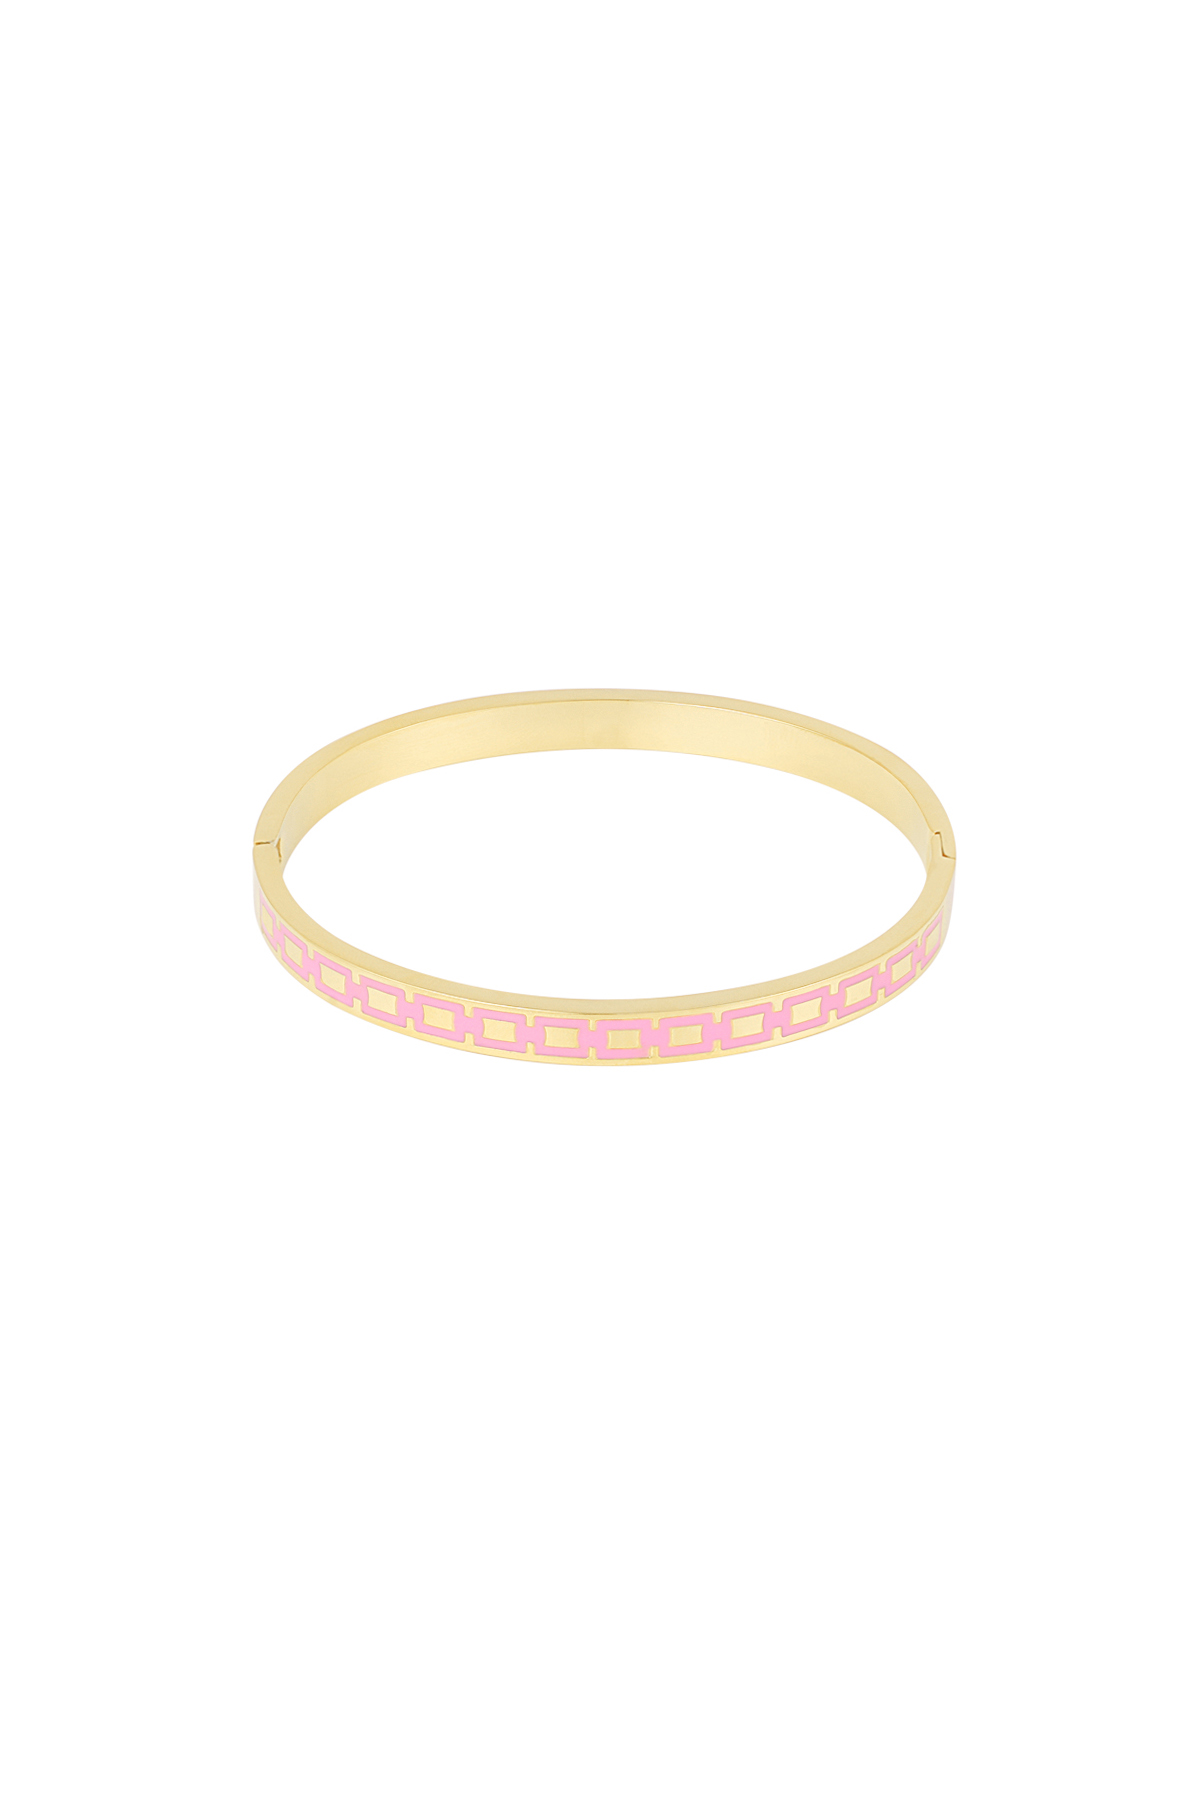 Slave bracelet with print - pink/gold 